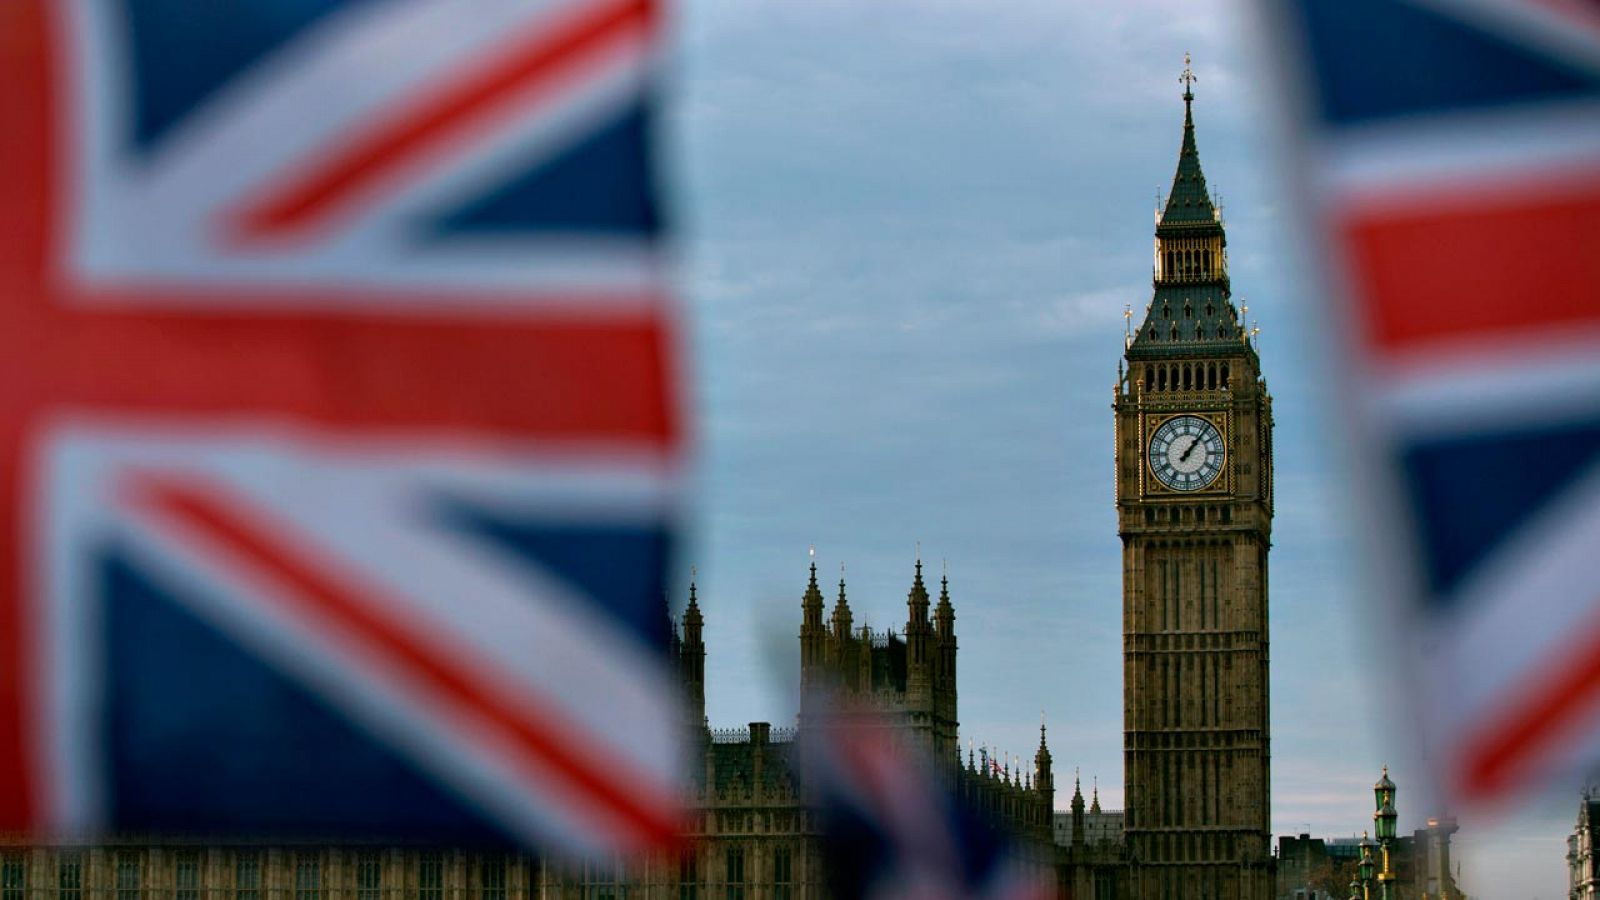 Banderas de Reino Unido con el 'Big Ben', la torre del Parlamento británico, al fondo